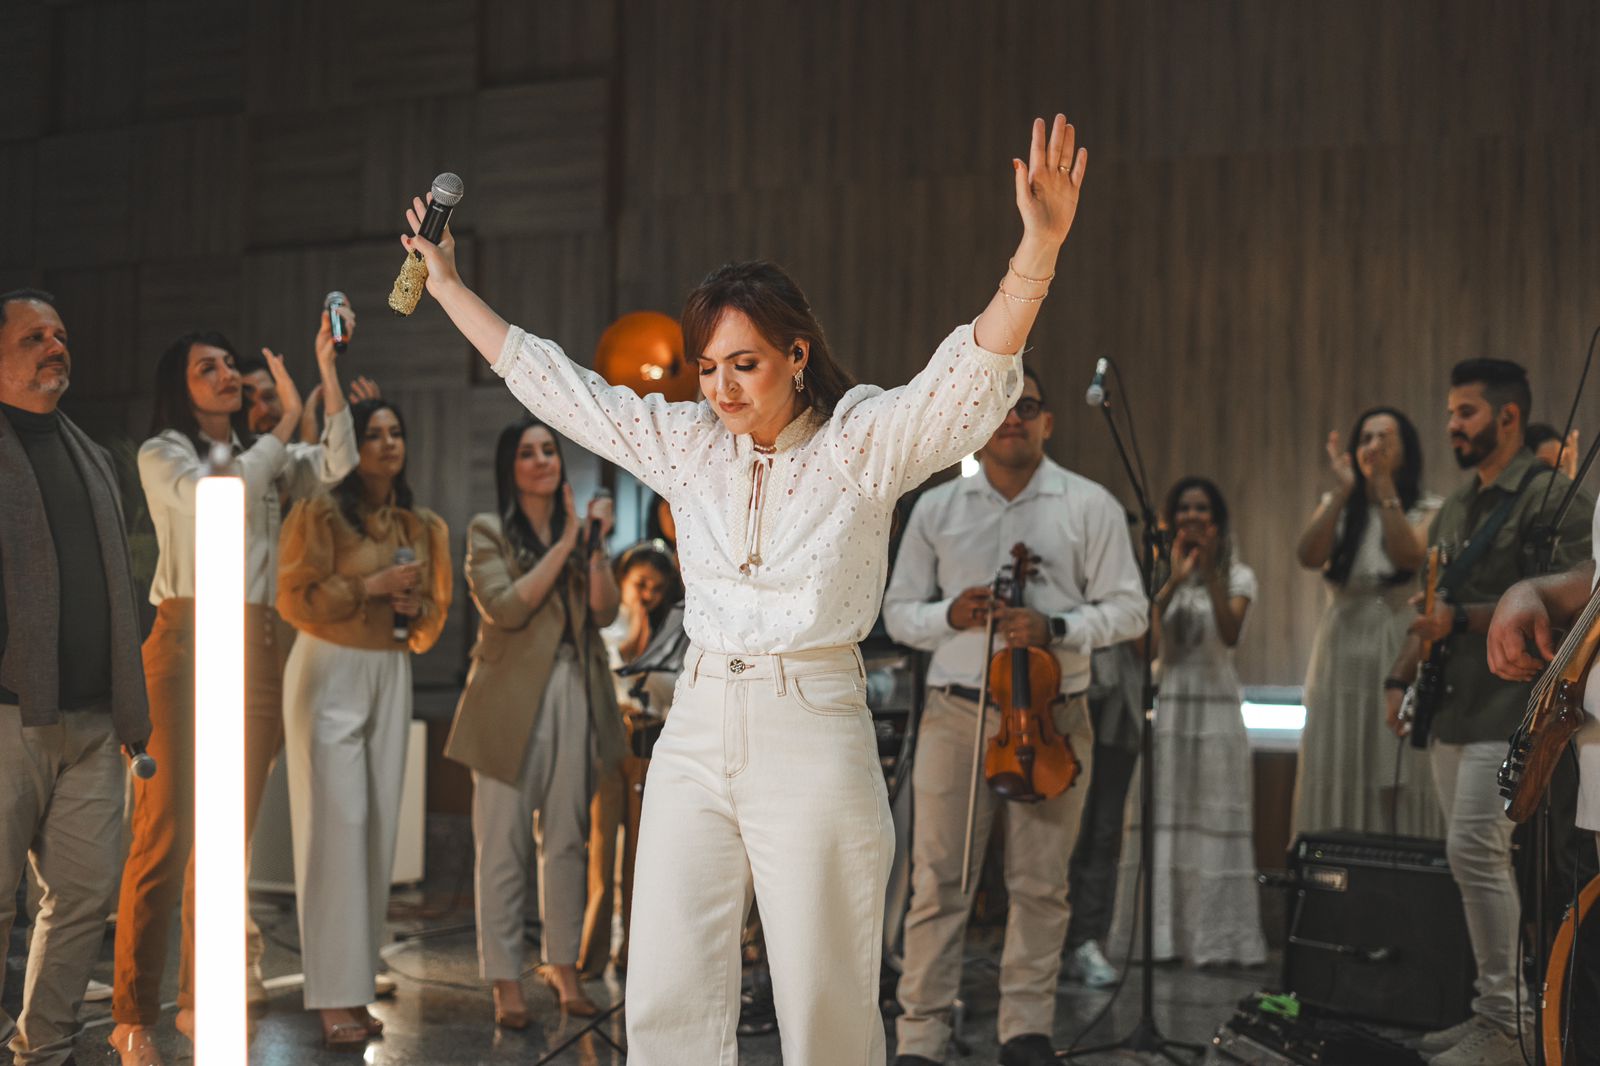 Mariana Bonatto em pura adoração com a música “Tu És O Rei”